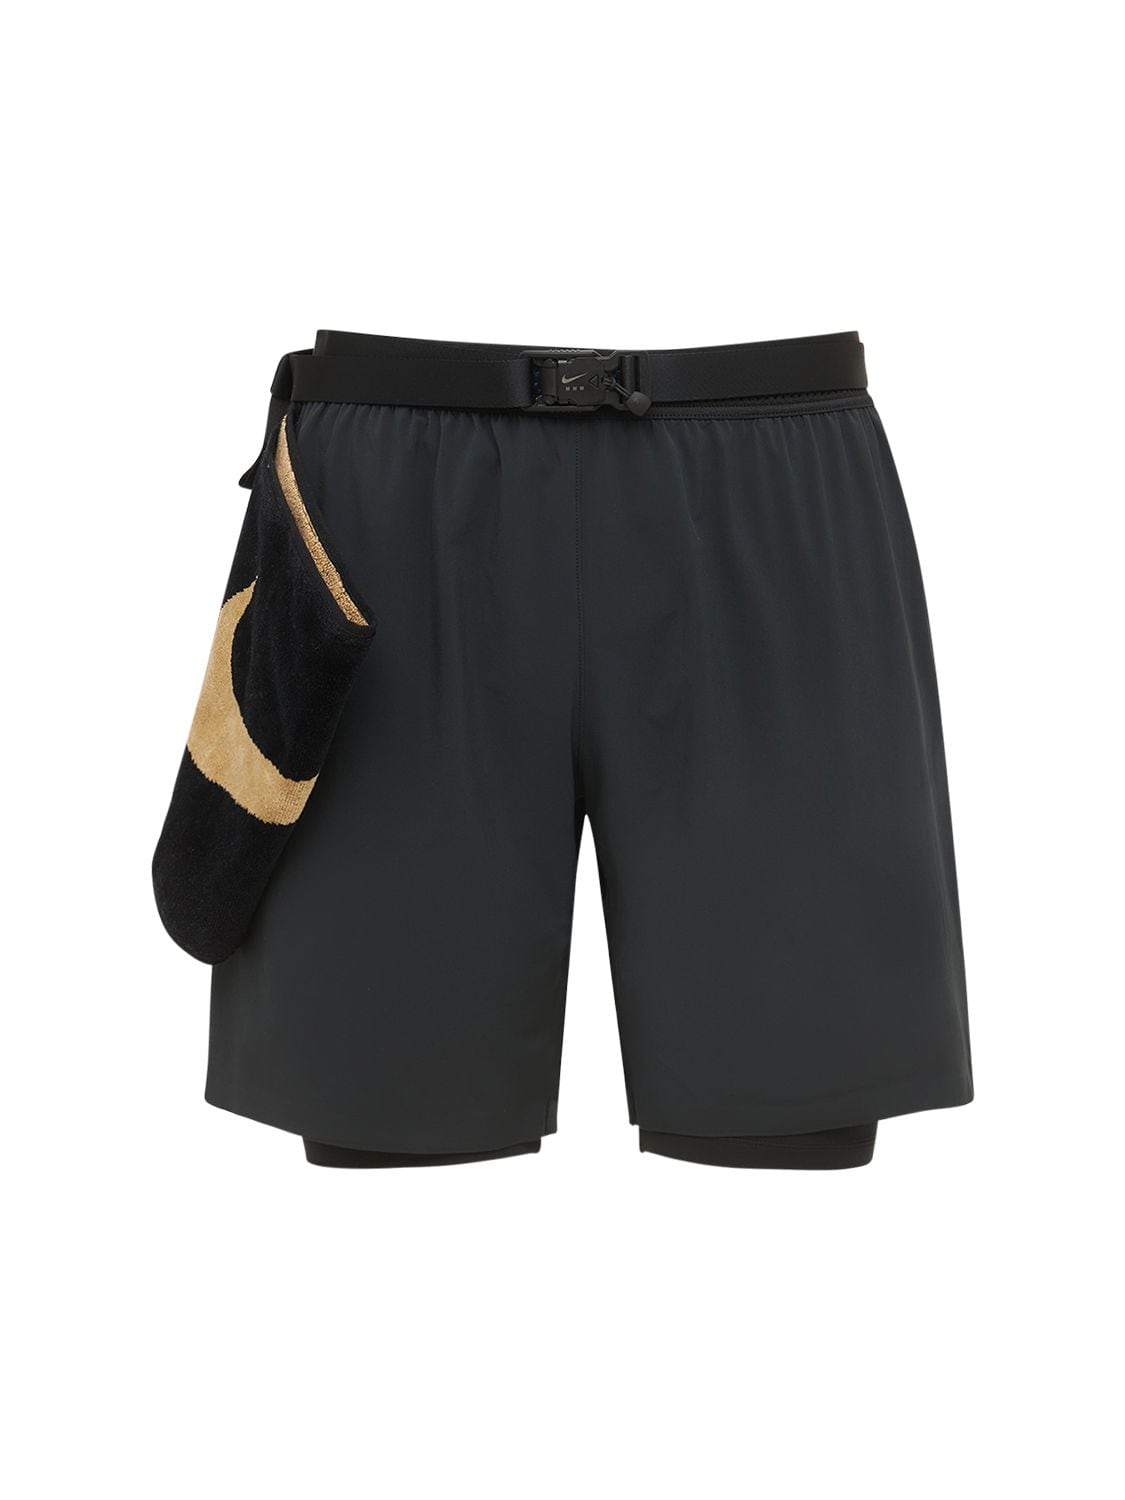 Nike Dri-FIT x MMW Men's 3-in-1 Shorts.